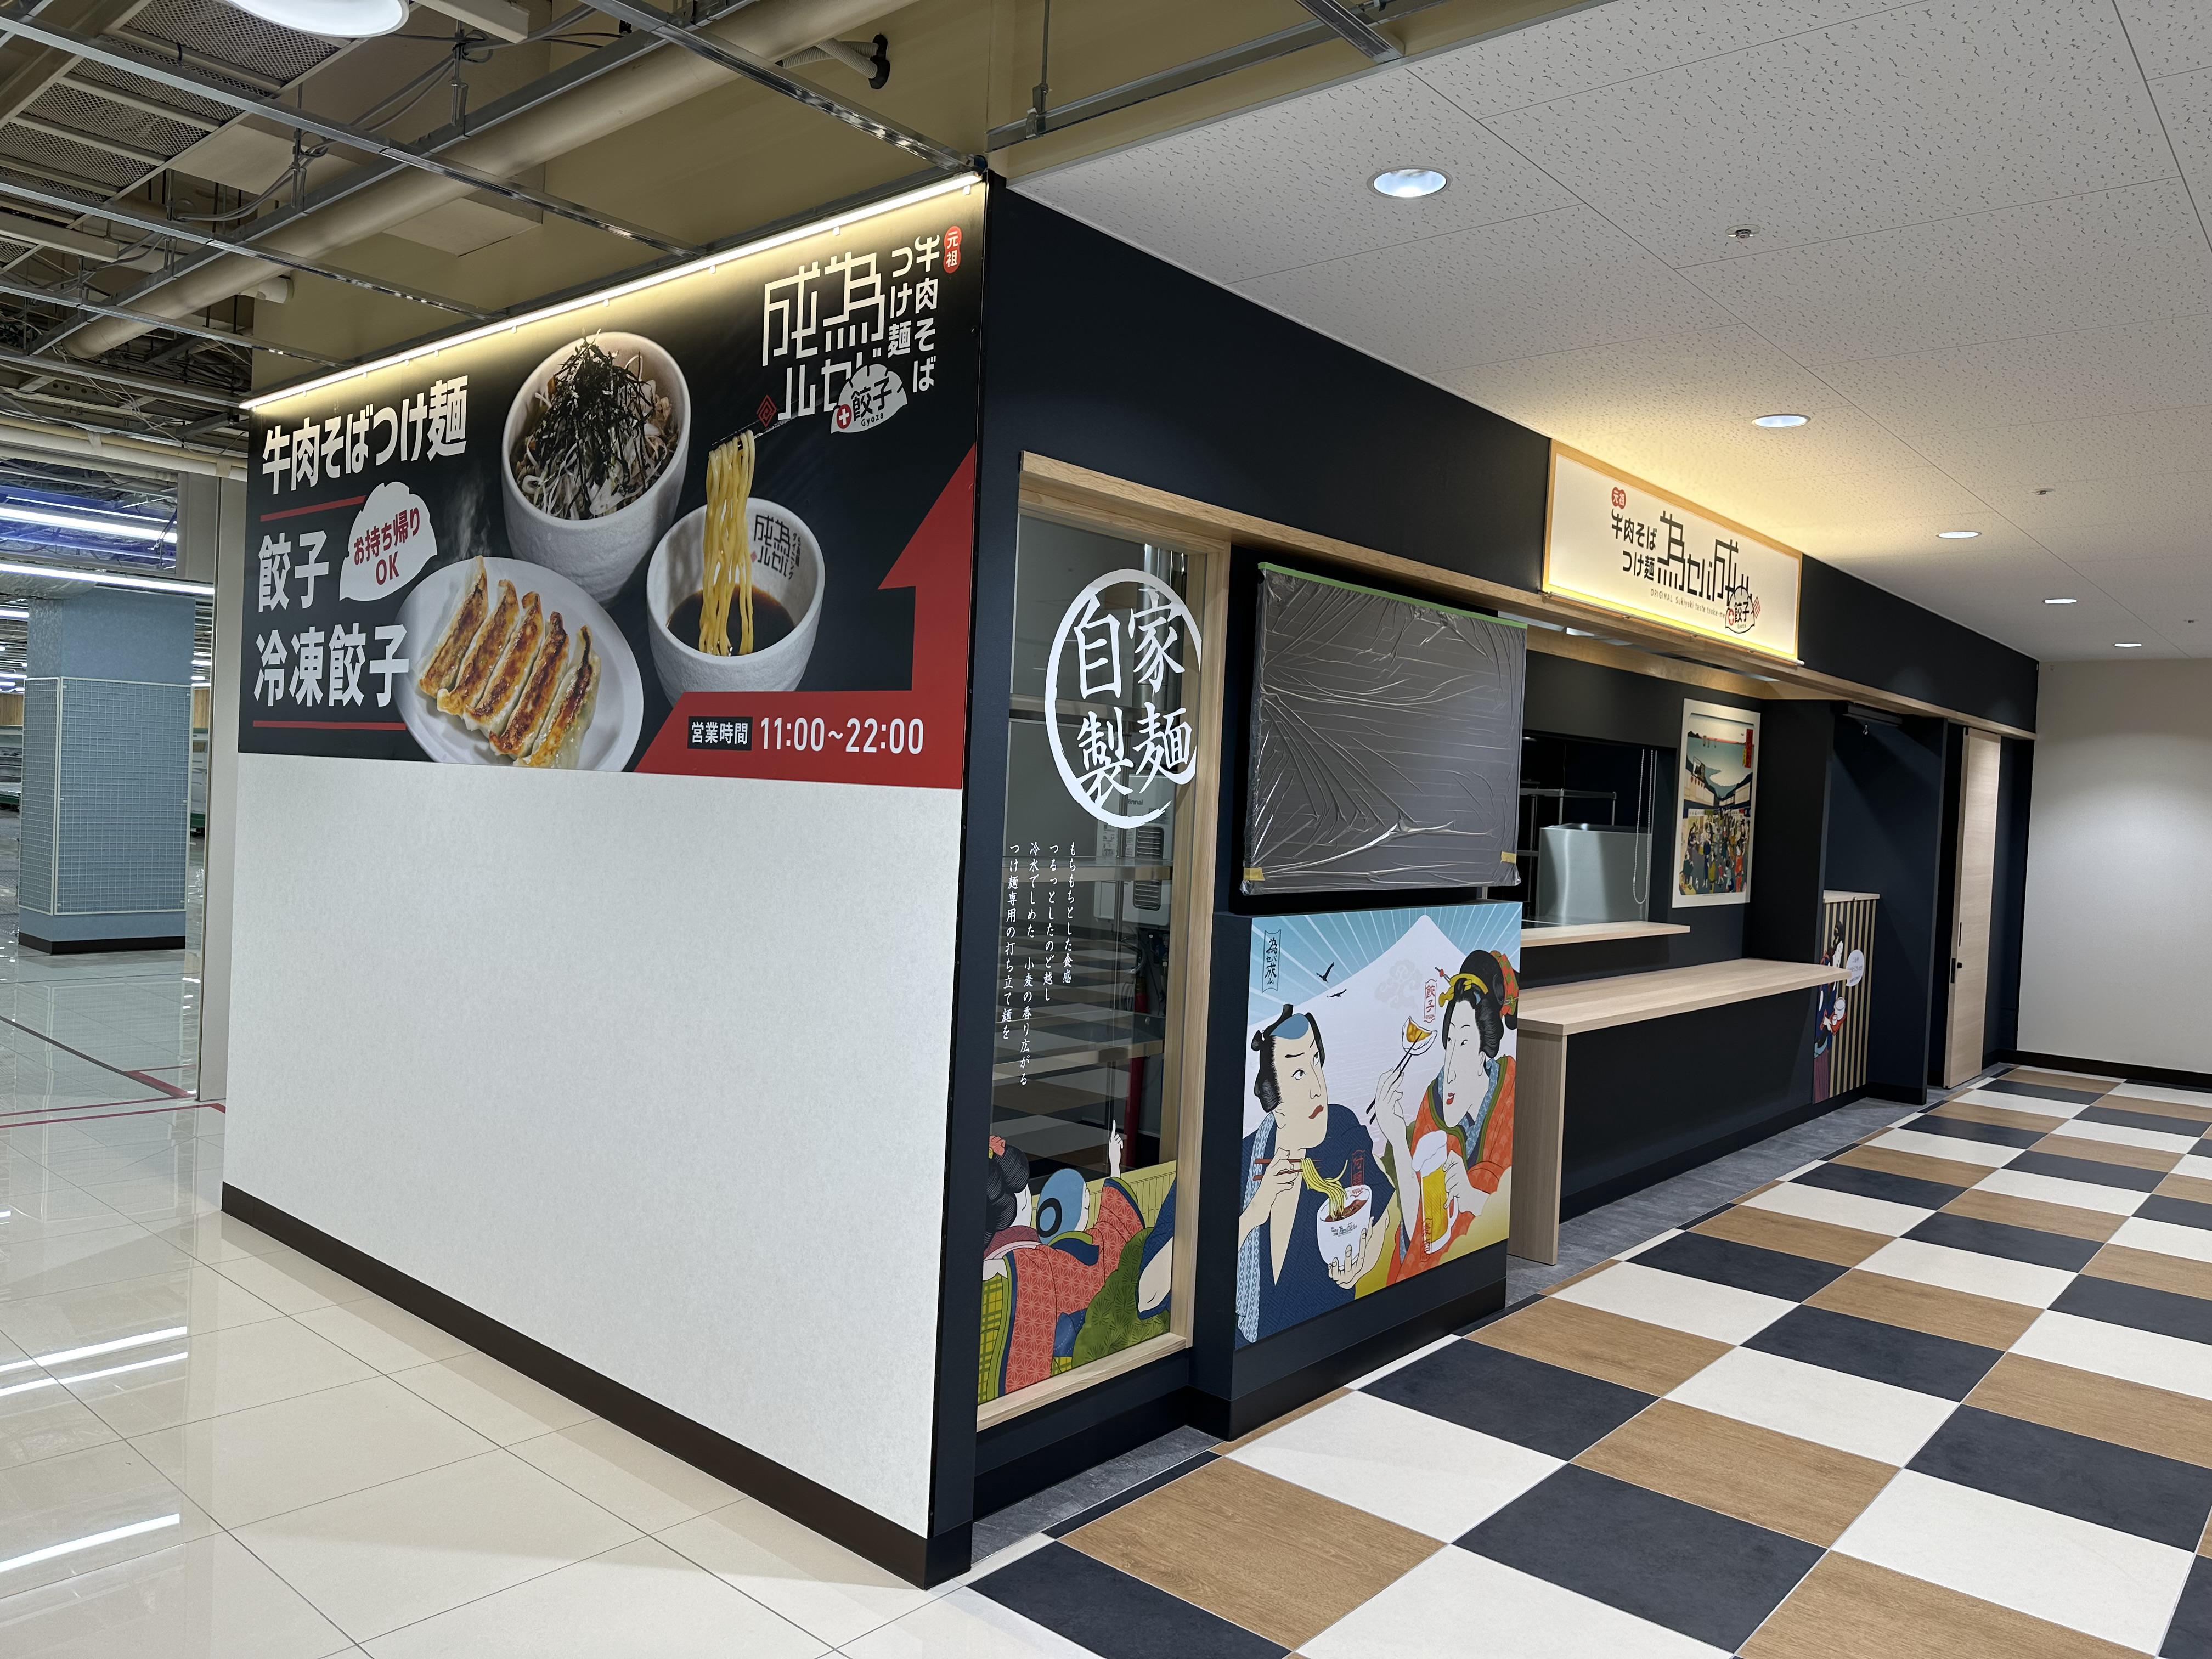 シャミネ松江、東京神田にある為セバ成ル。グループの新店舗です。